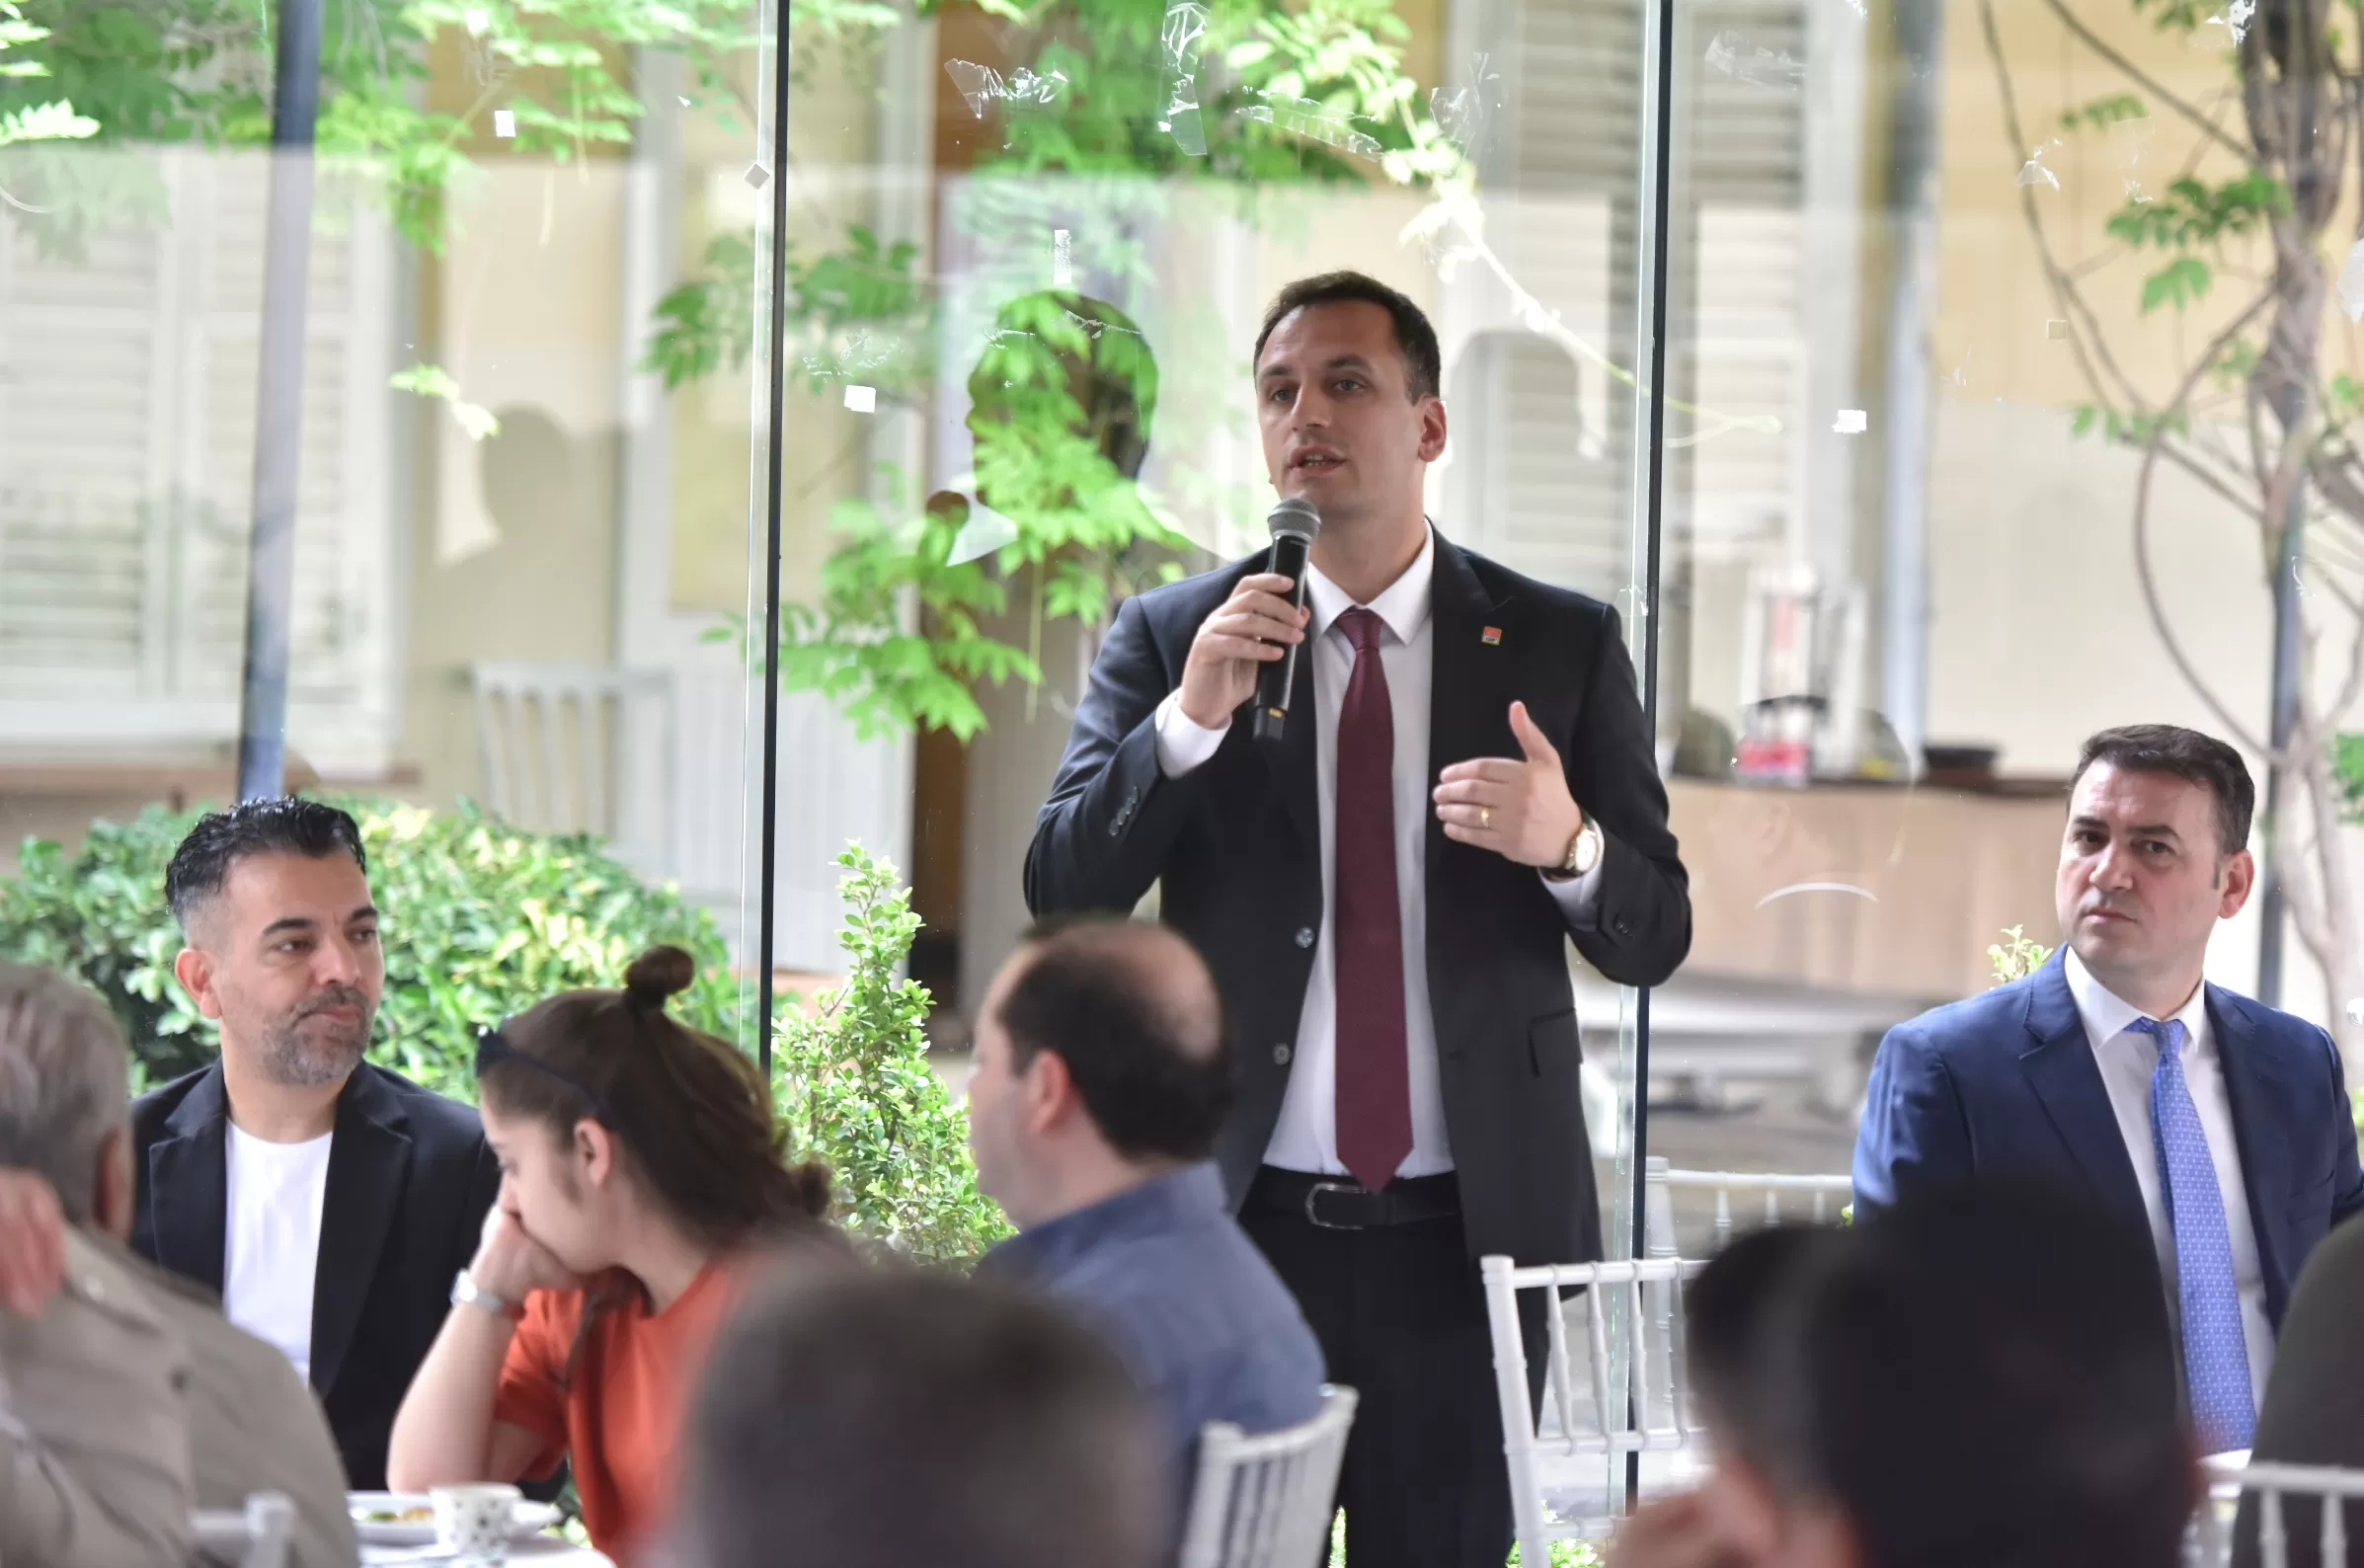 Bornova Belediye Başkanı Ömer Eşki, esnaf odaları temsilcileriyle kahvaltıda buluşarak kentin daha yaşanabilir olması için ortak çalışma kararı aldı. 